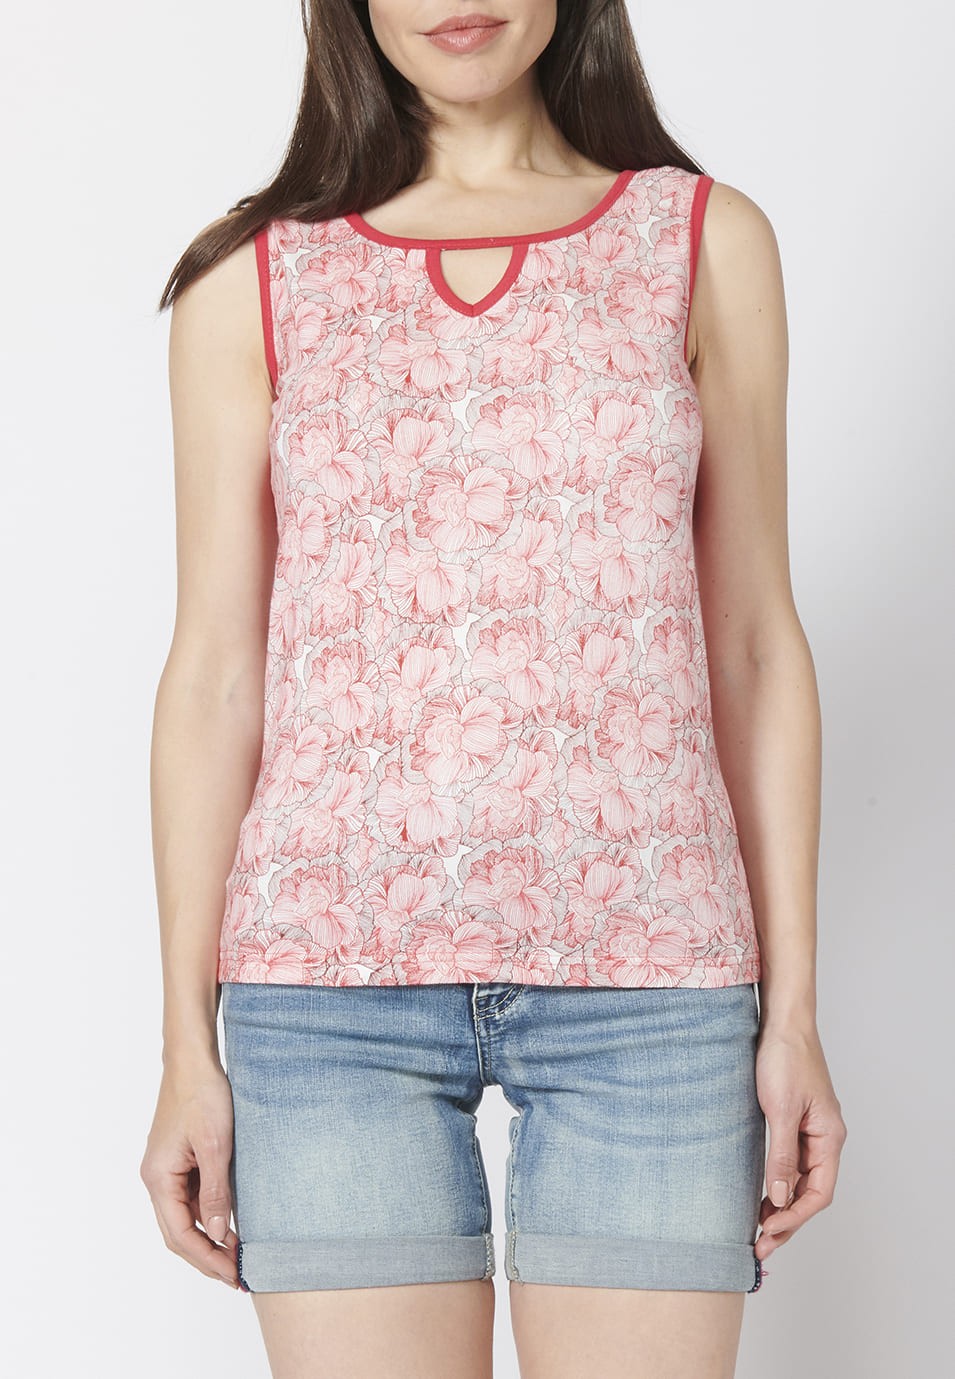 Camiseta Top tirantes de Algodón con escote en Pico y Estampado Floral para Mujer 1